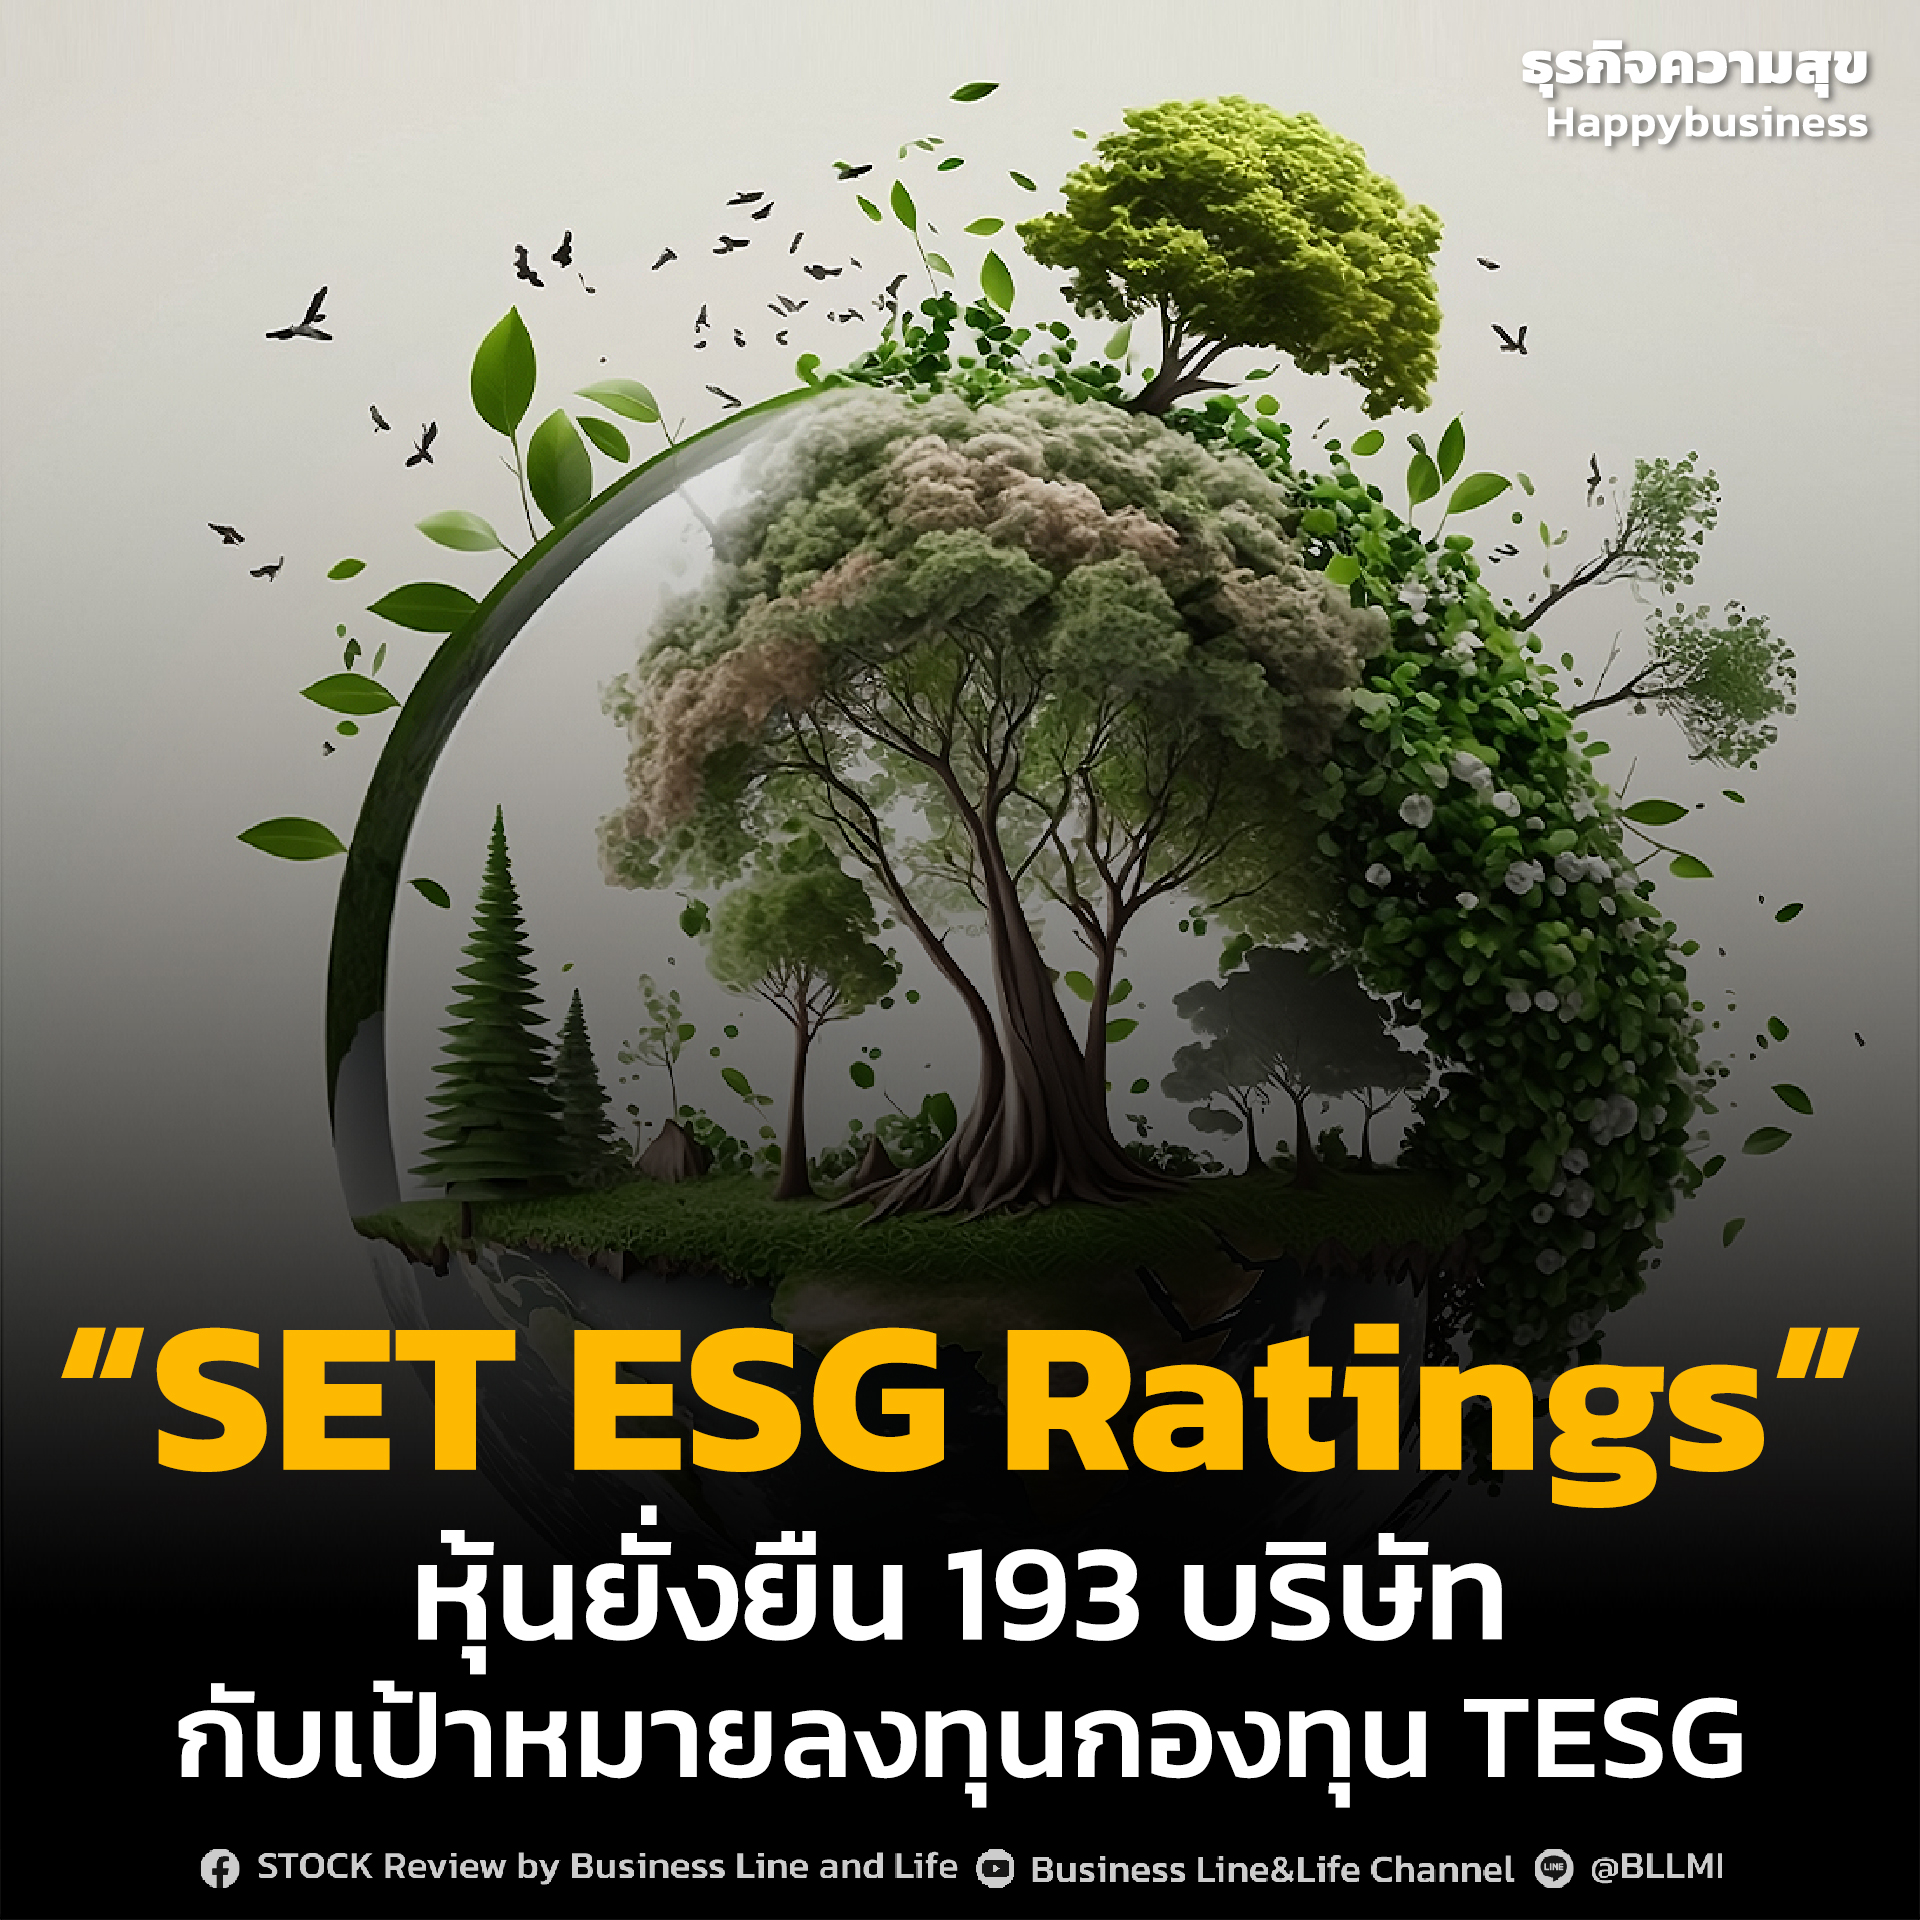 “SET ESG Ratings” หุ้นยั่งยืน 193 บริษัท กับเป้าหมายลงทุนกองทุน TESG